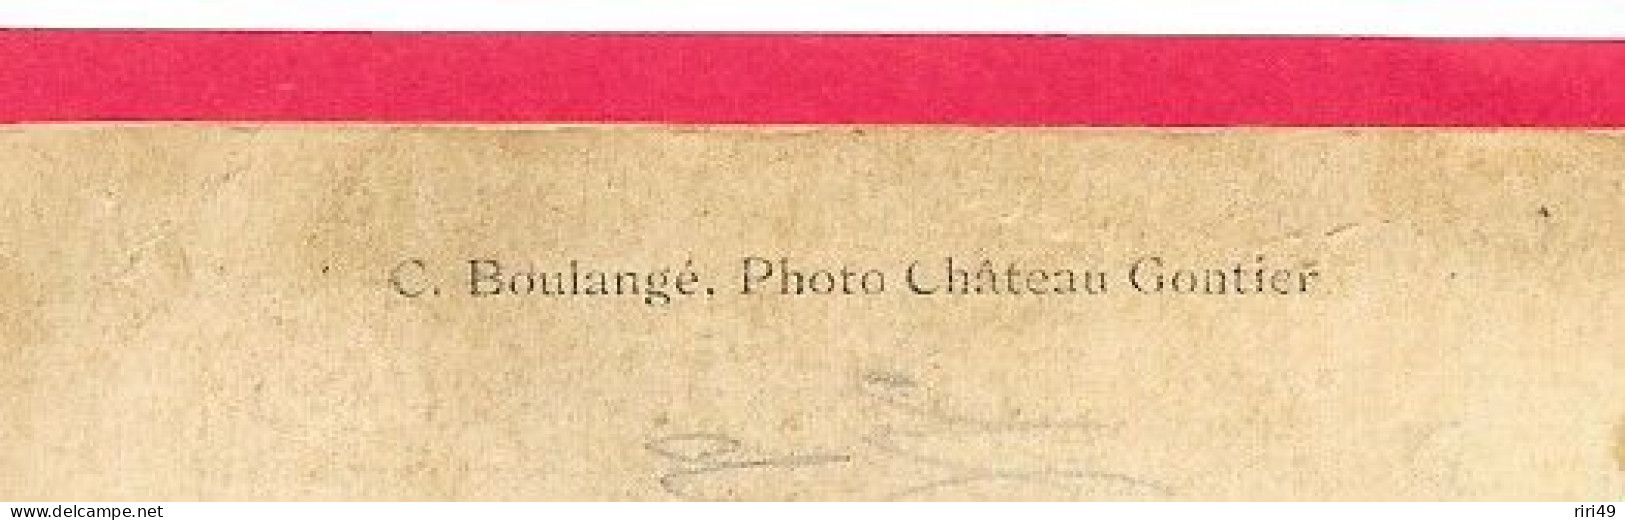 Cpa  166ème Régiment, 166e, Photographe C.Boulangé,  Photo Château Gontier, Dos Vierge, Voir Scannes Dos écrit - Personaggi